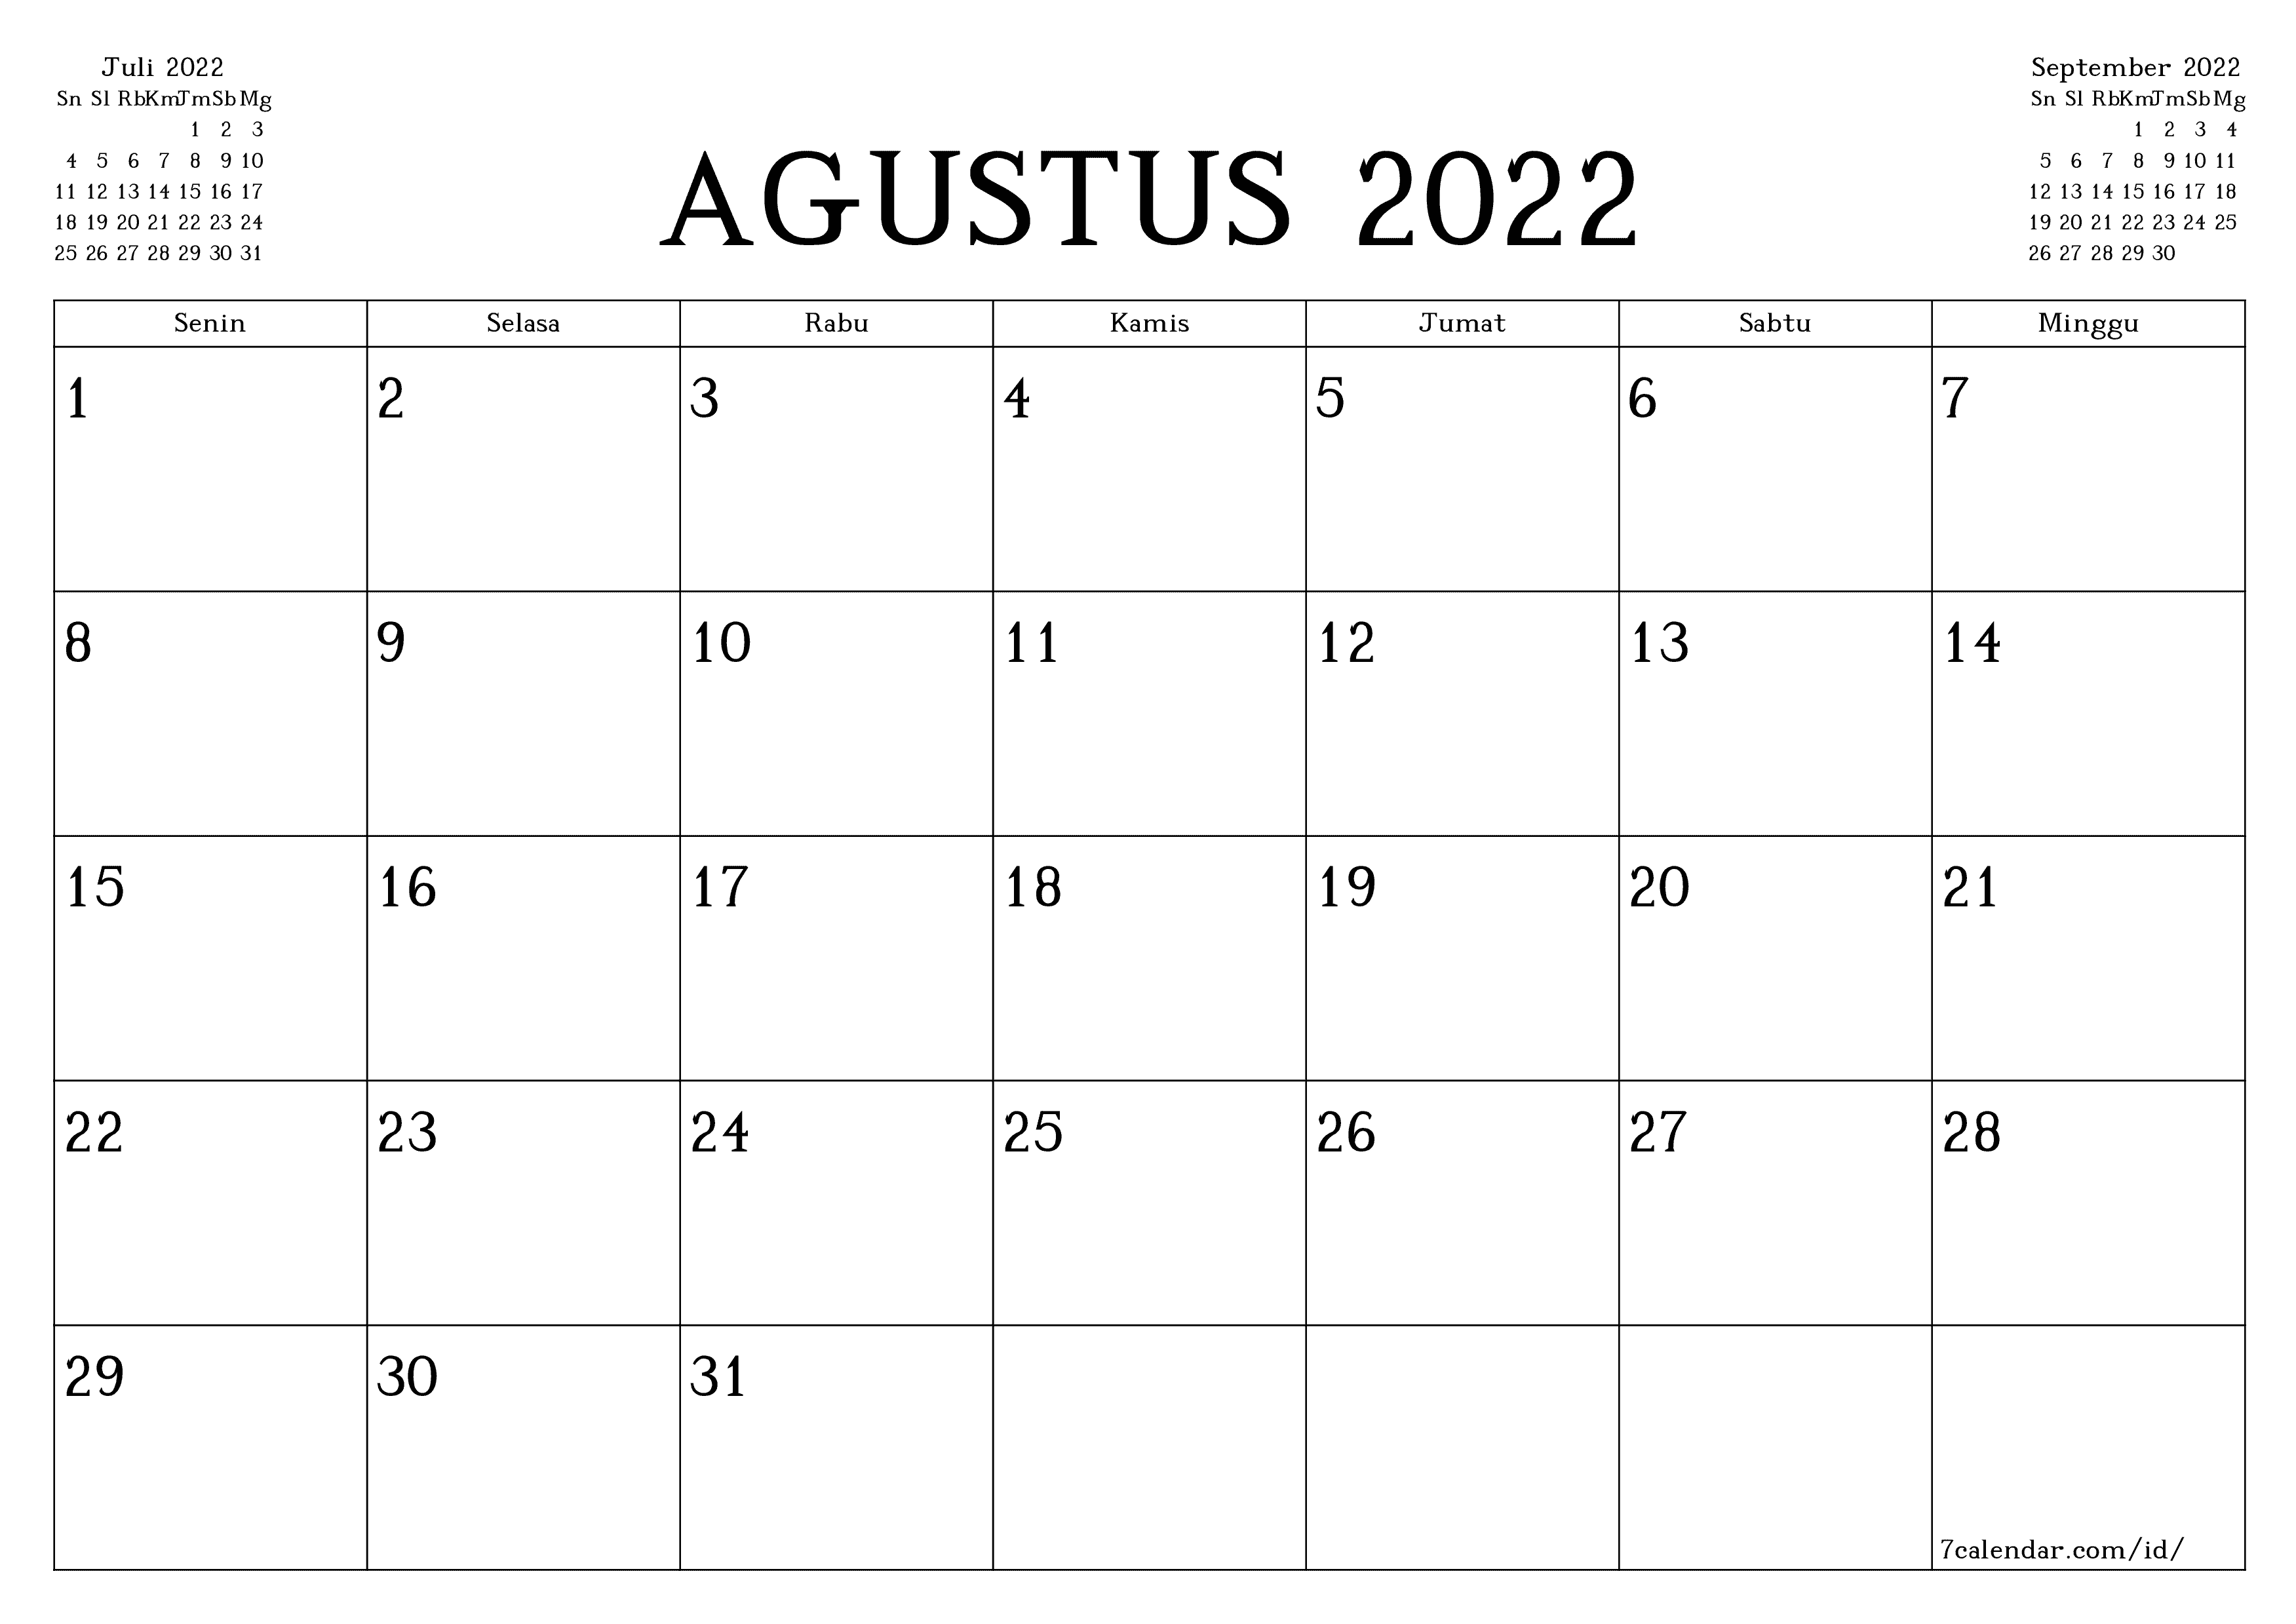 Daftar Peristiwa Penting di Bulan Agustus 2022, Apakah Ada Hari Libur